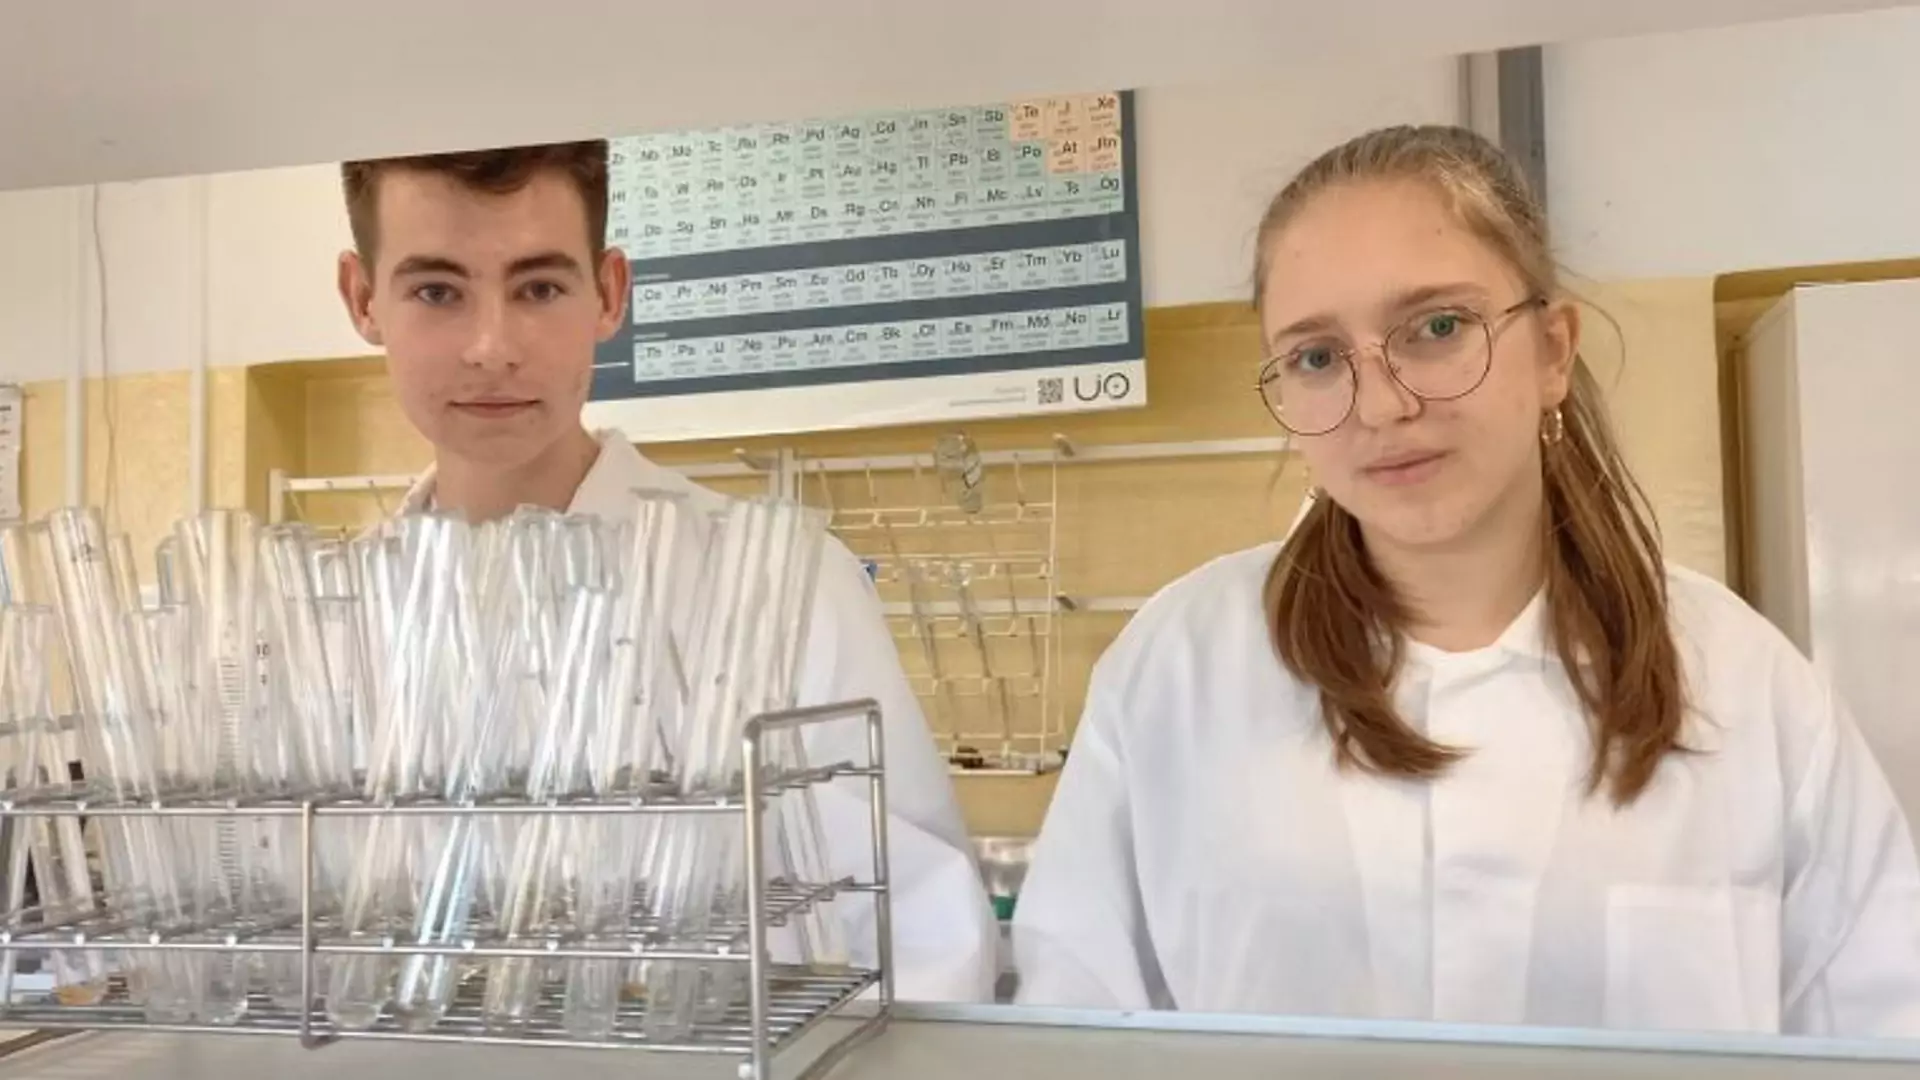 16-latkowie z Polski znaleźli sposób na utylizację plastiku. Jako pierwsi na świecie